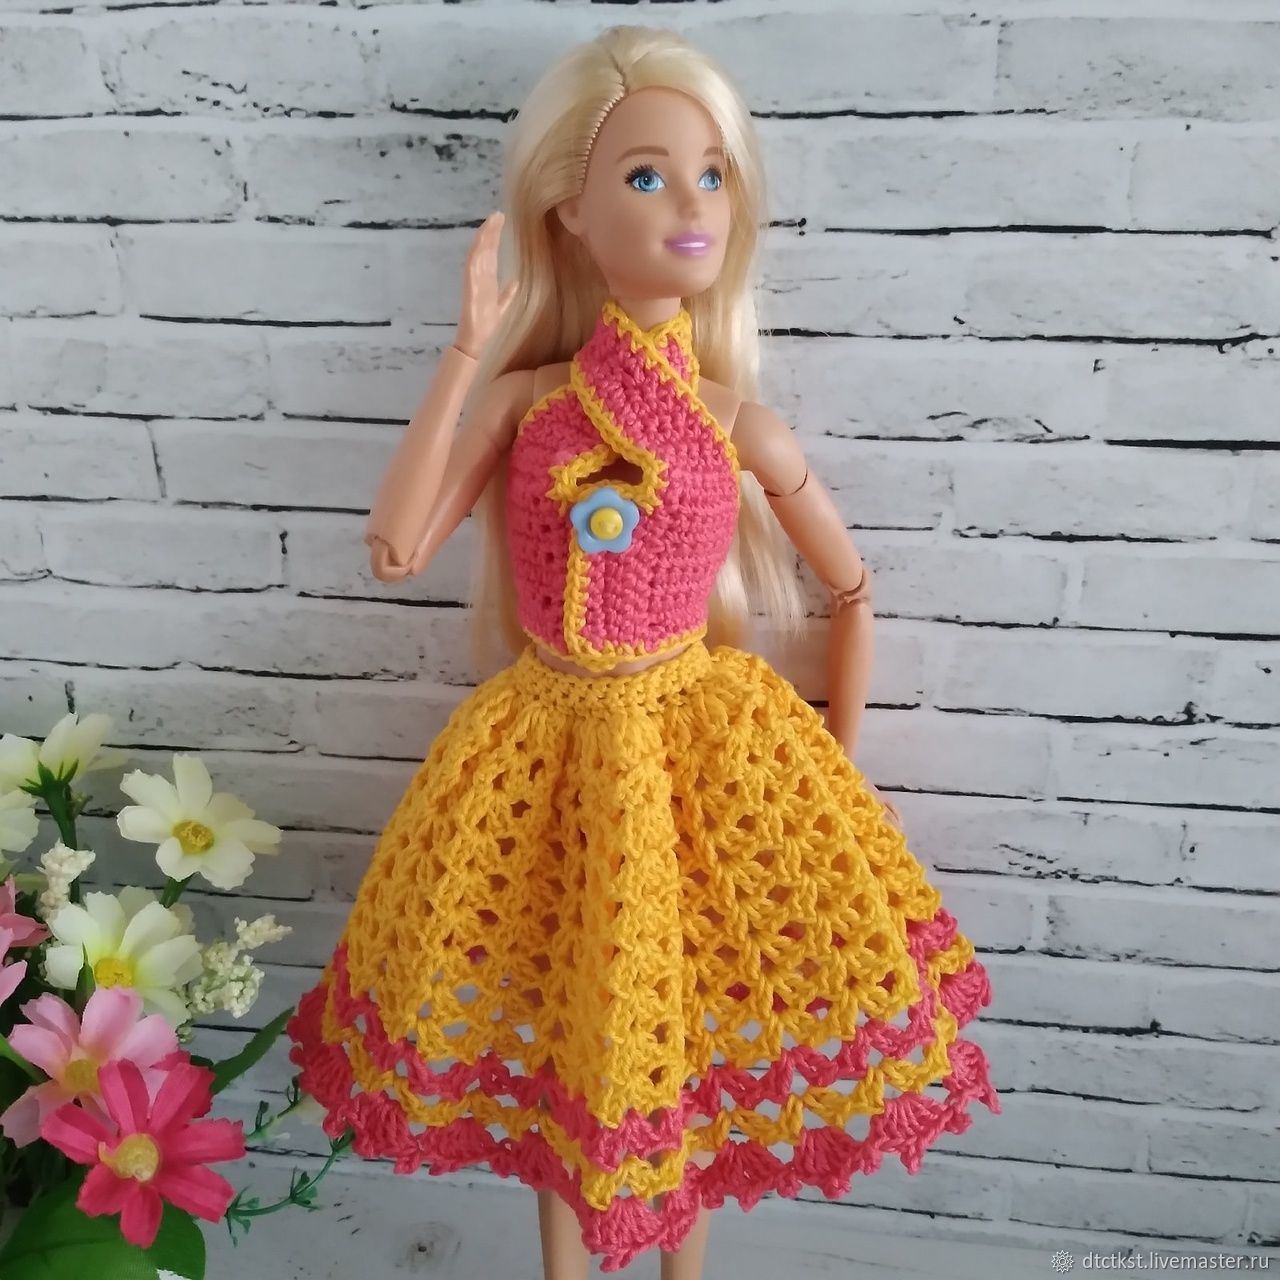 Описание Кукла Mattel Обувь, одежда, мебель, аксессуары Одежда для куклы Barbie Модный сиреневый